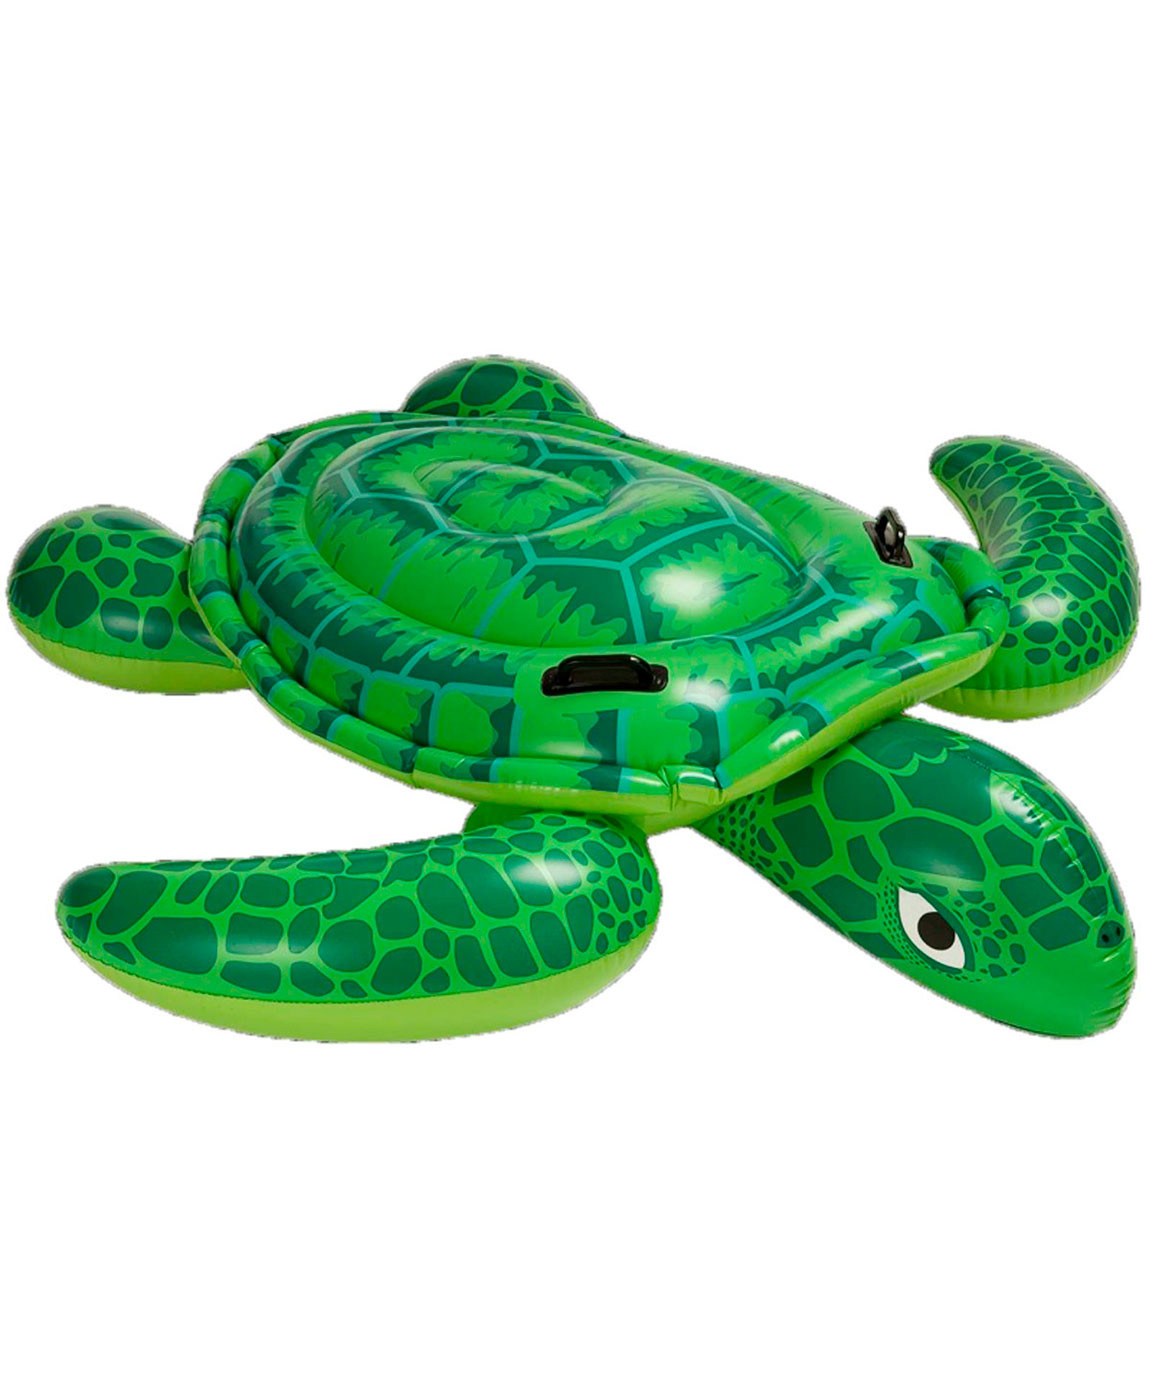 Надувная игрушка Intex Морская черепаха 57524 игрушка надувная для плавания рептилия 193м х 94 см 41478